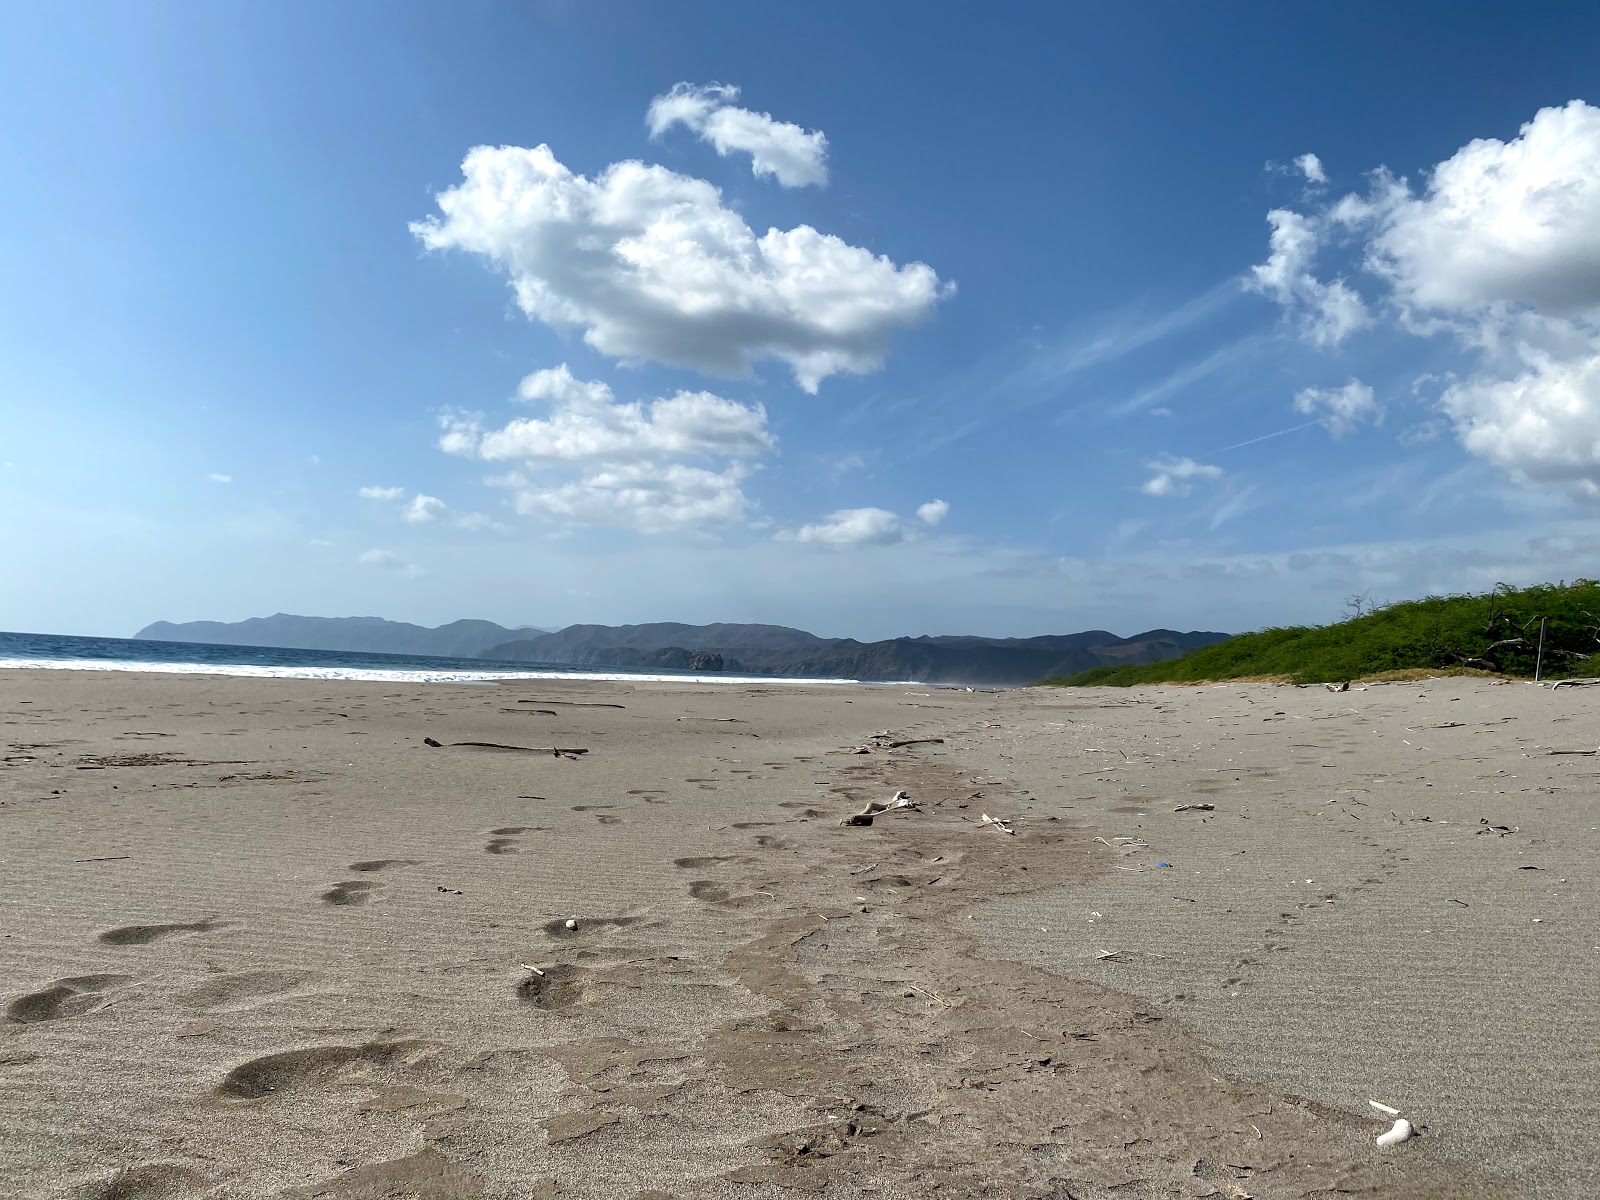 Zdjęcie Naranjo beach II z powierzchnią szary drobny piasek